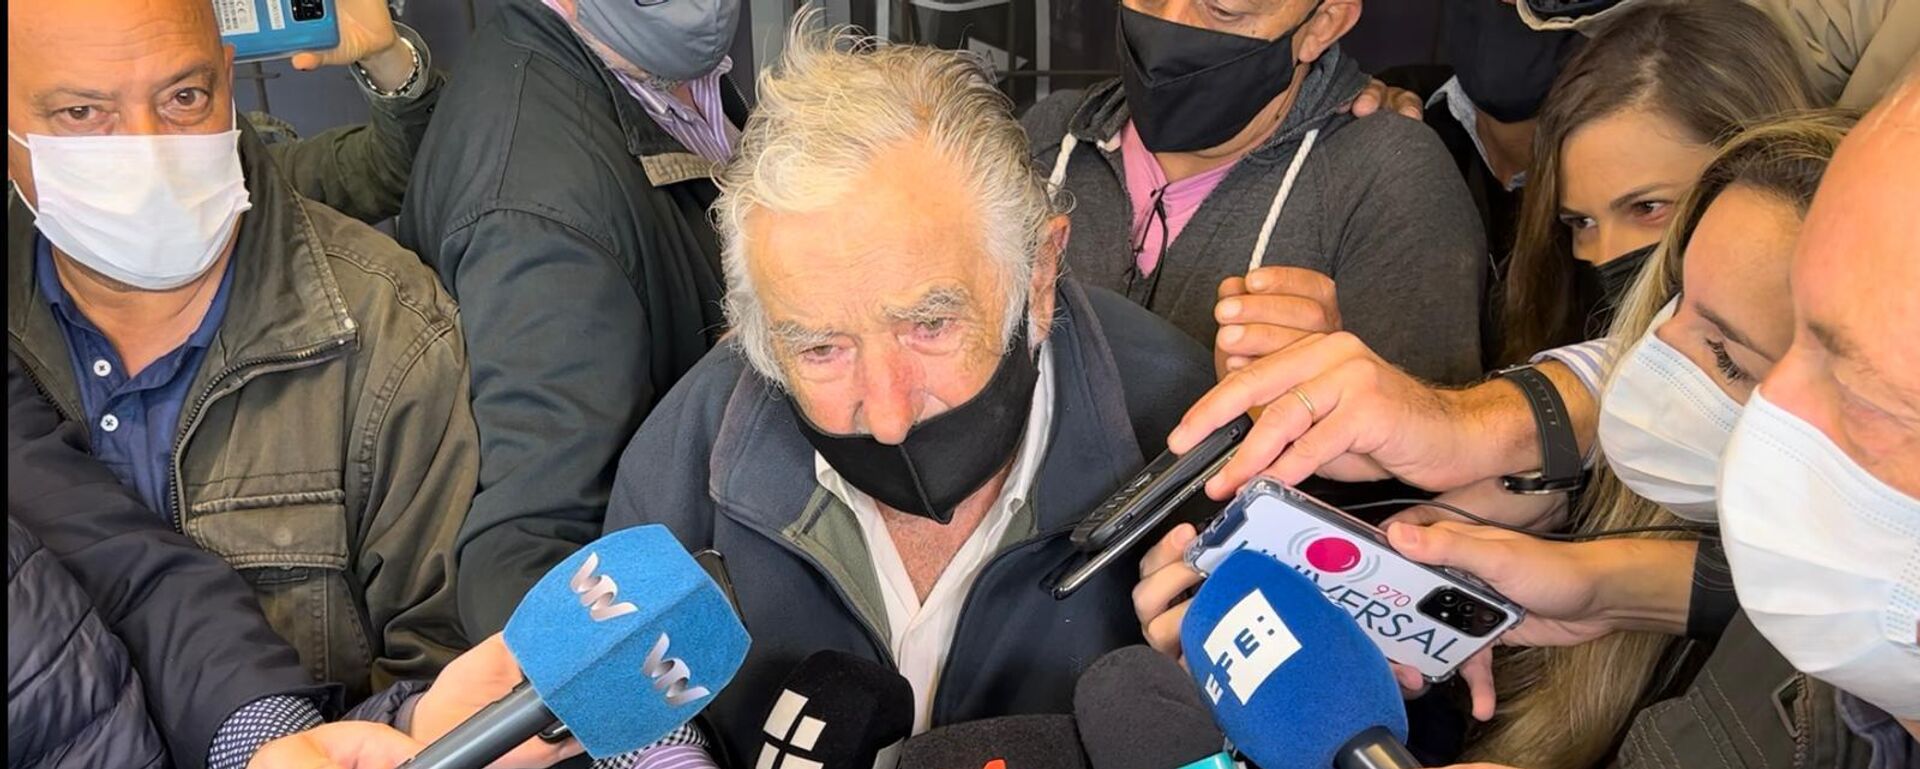 José 'Pepe' Mujica sufragó en el referéndum revocatorio de la Ley de Urgente Consideración (LUC) - Sputnik Mundo, 1920, 27.03.2022